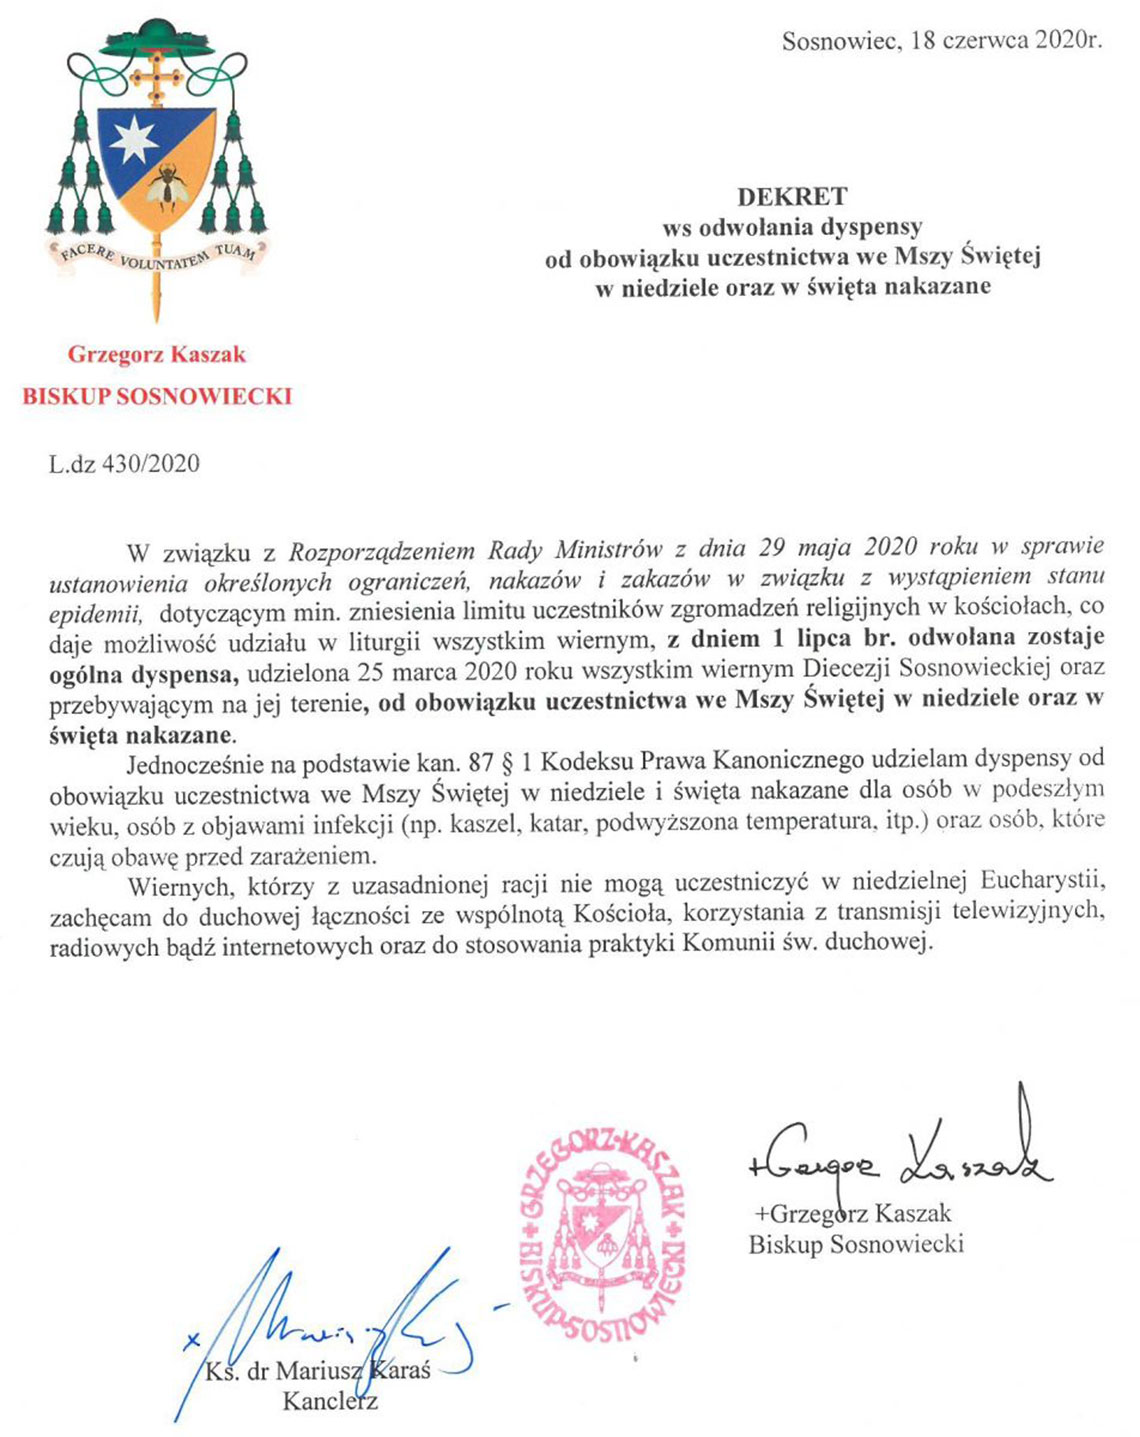 Dekret Biskupa Sosnowieckiego ws. odwołania dyspensy